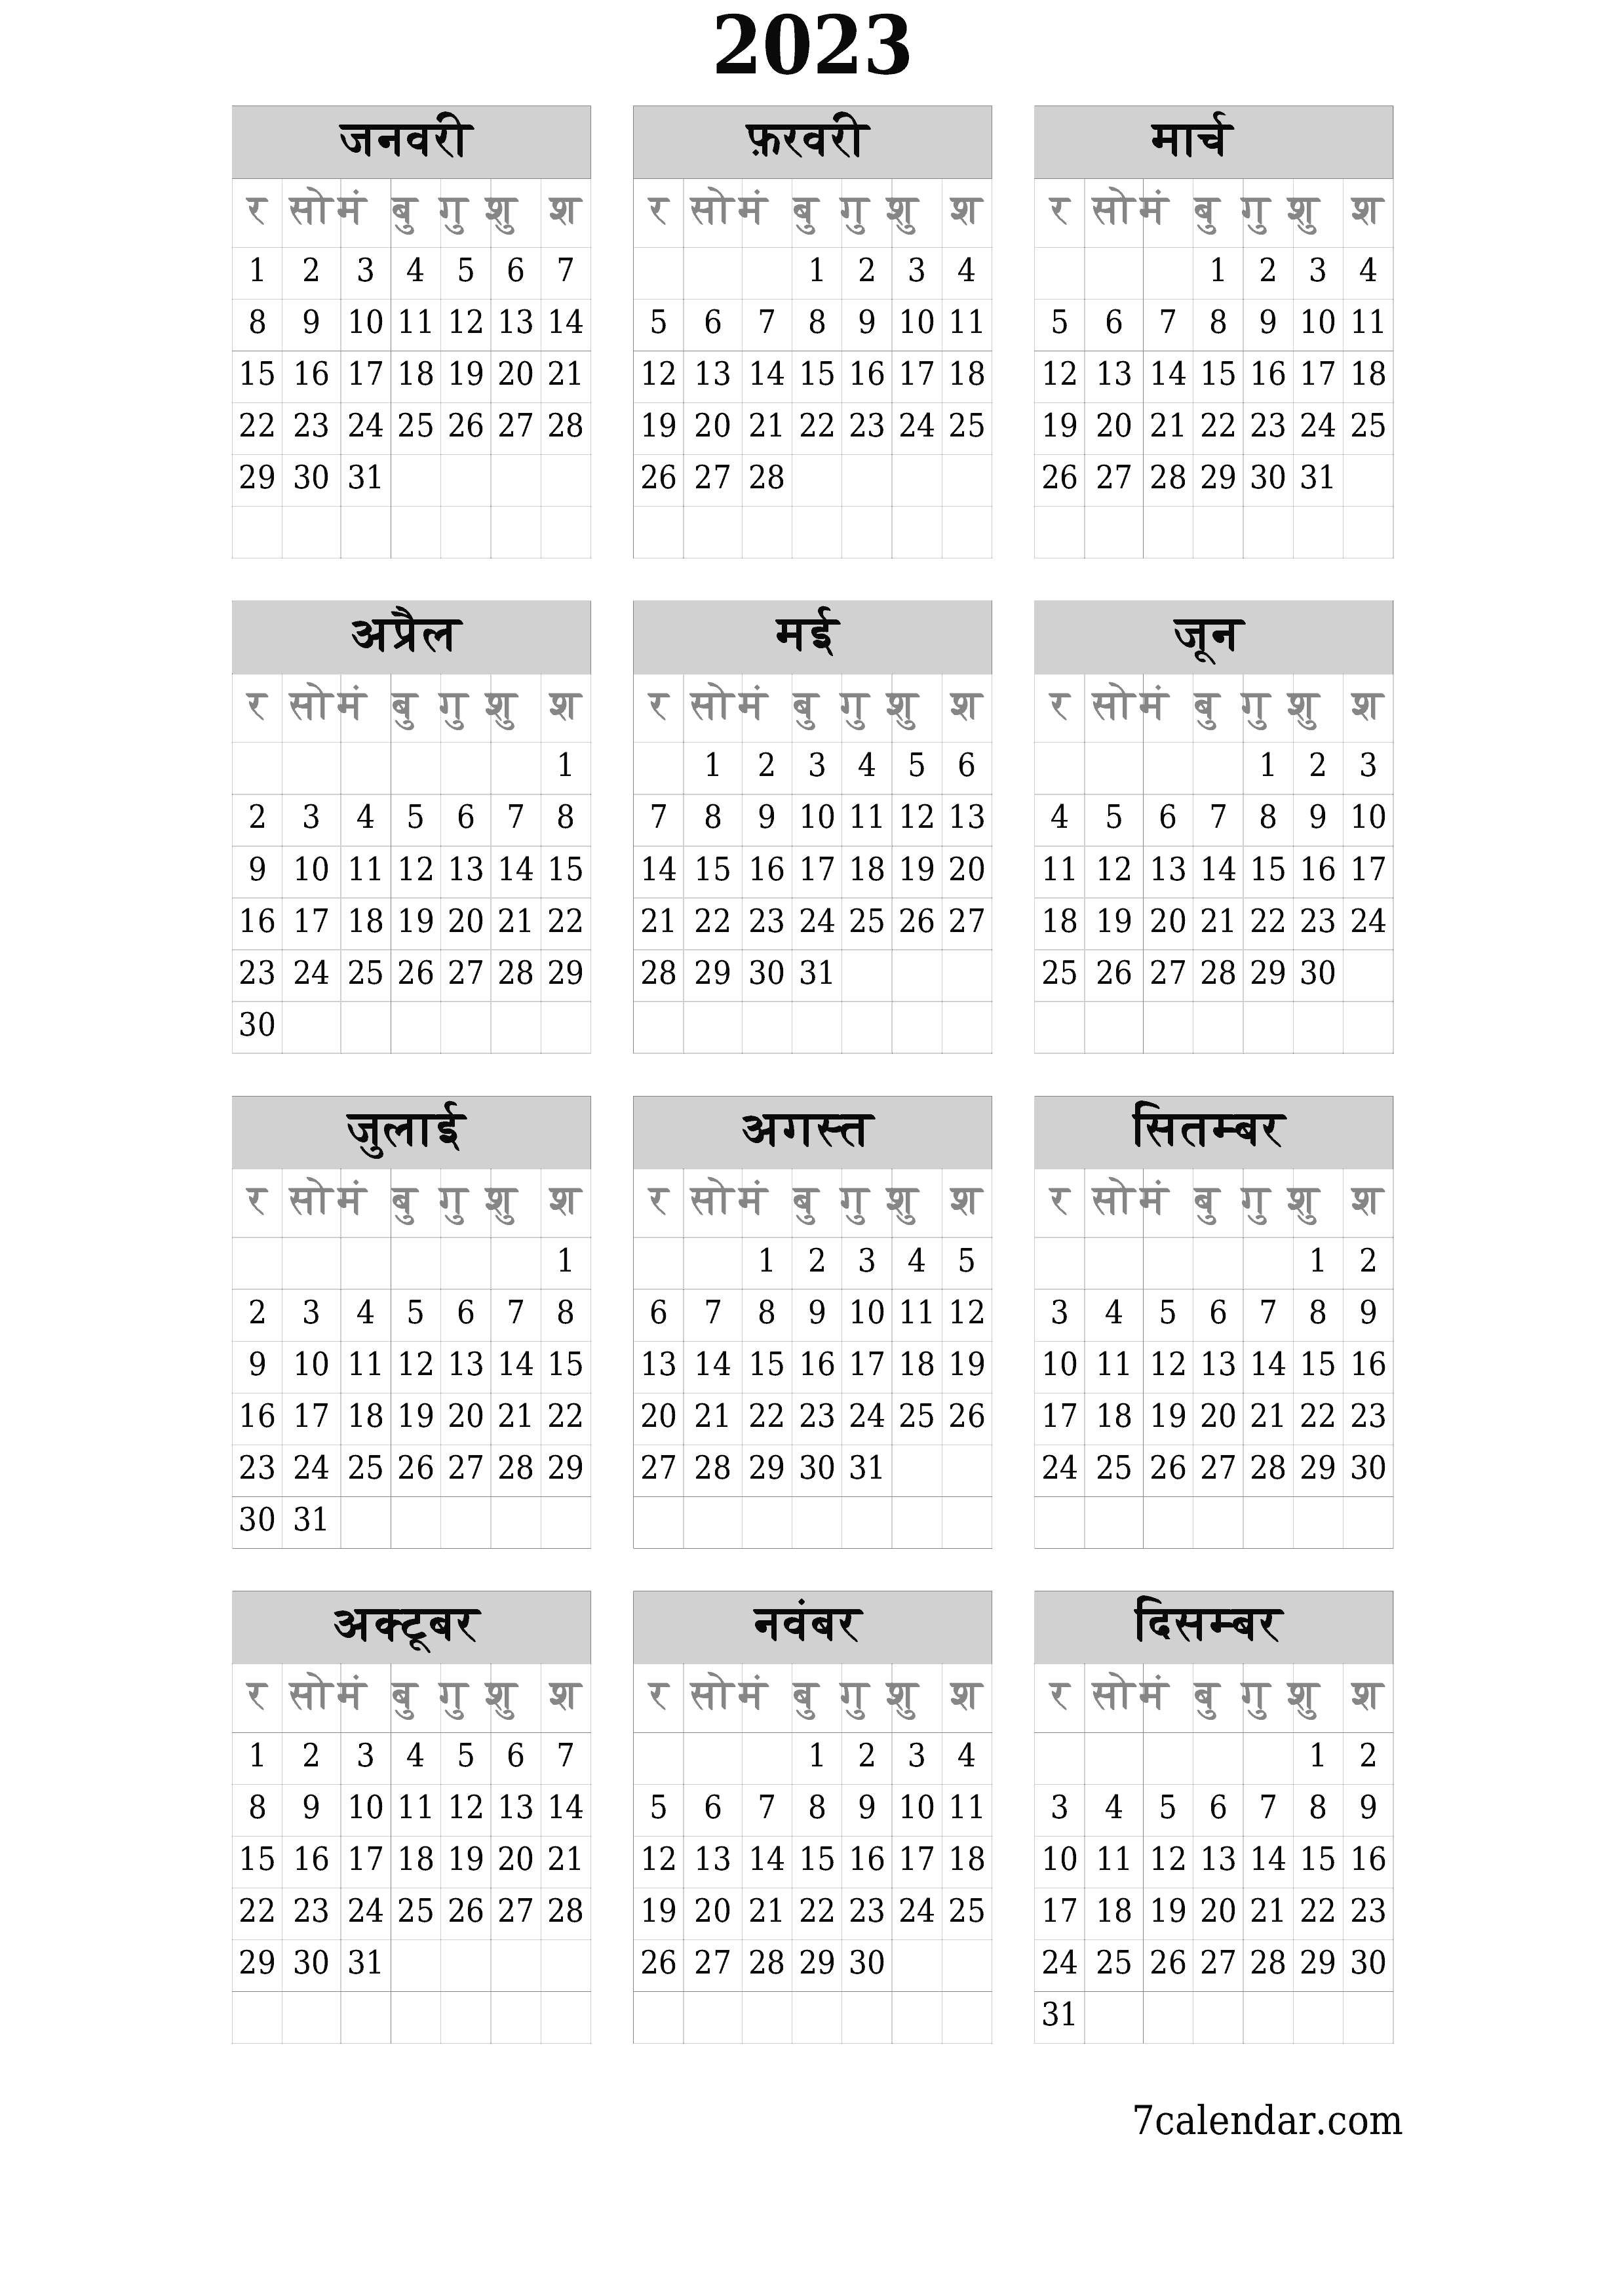 वर्ष 2023 के लिए खाली वार्षिक योजनाकार कैलेंडर, नोट्स के साथ सहेजें और पीडीएफ में प्रिंट करें PNG Hindi - 7calendar.com